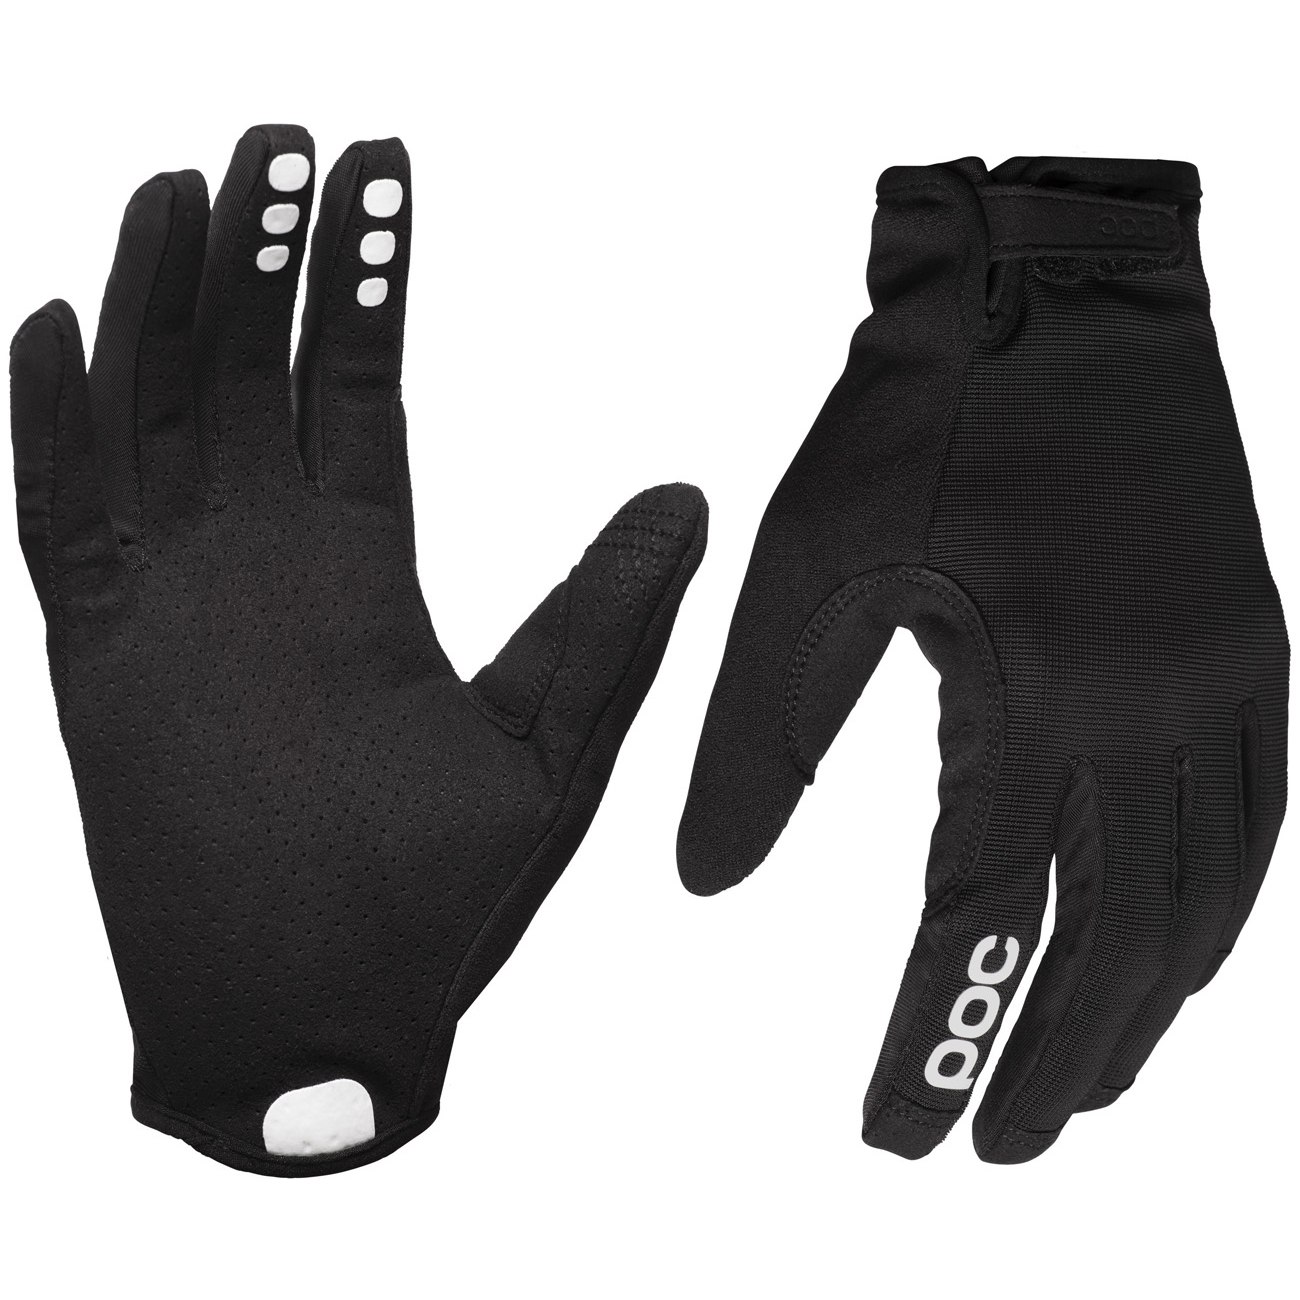 Picture of POC Resistance Enduro Adjustable Gloves - 8204 Uranium black/Uranium Black